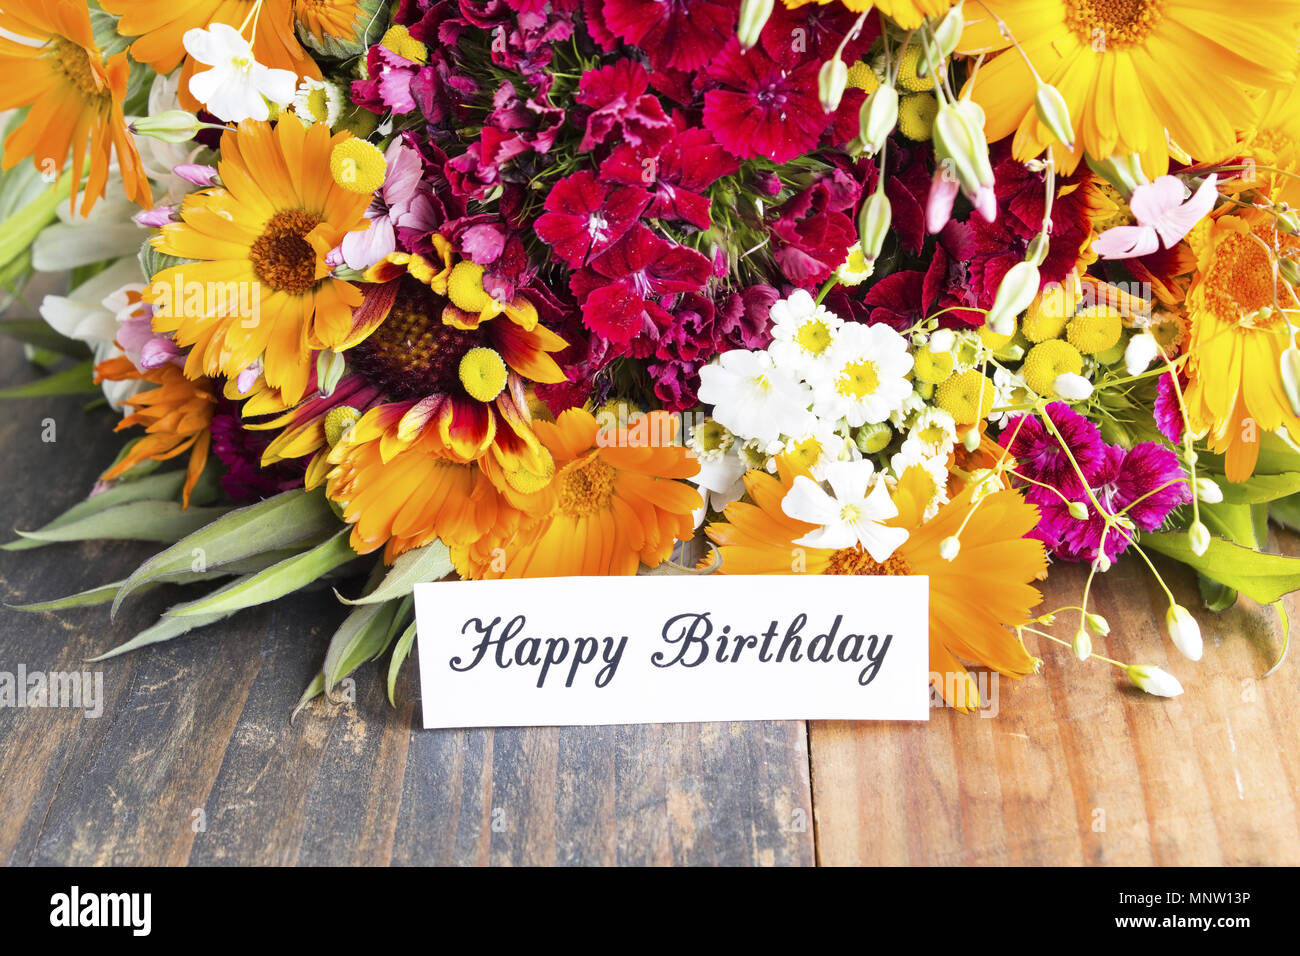 Happy Birthday Karte mit Frühling Blumen Stockfotografie - Alamy